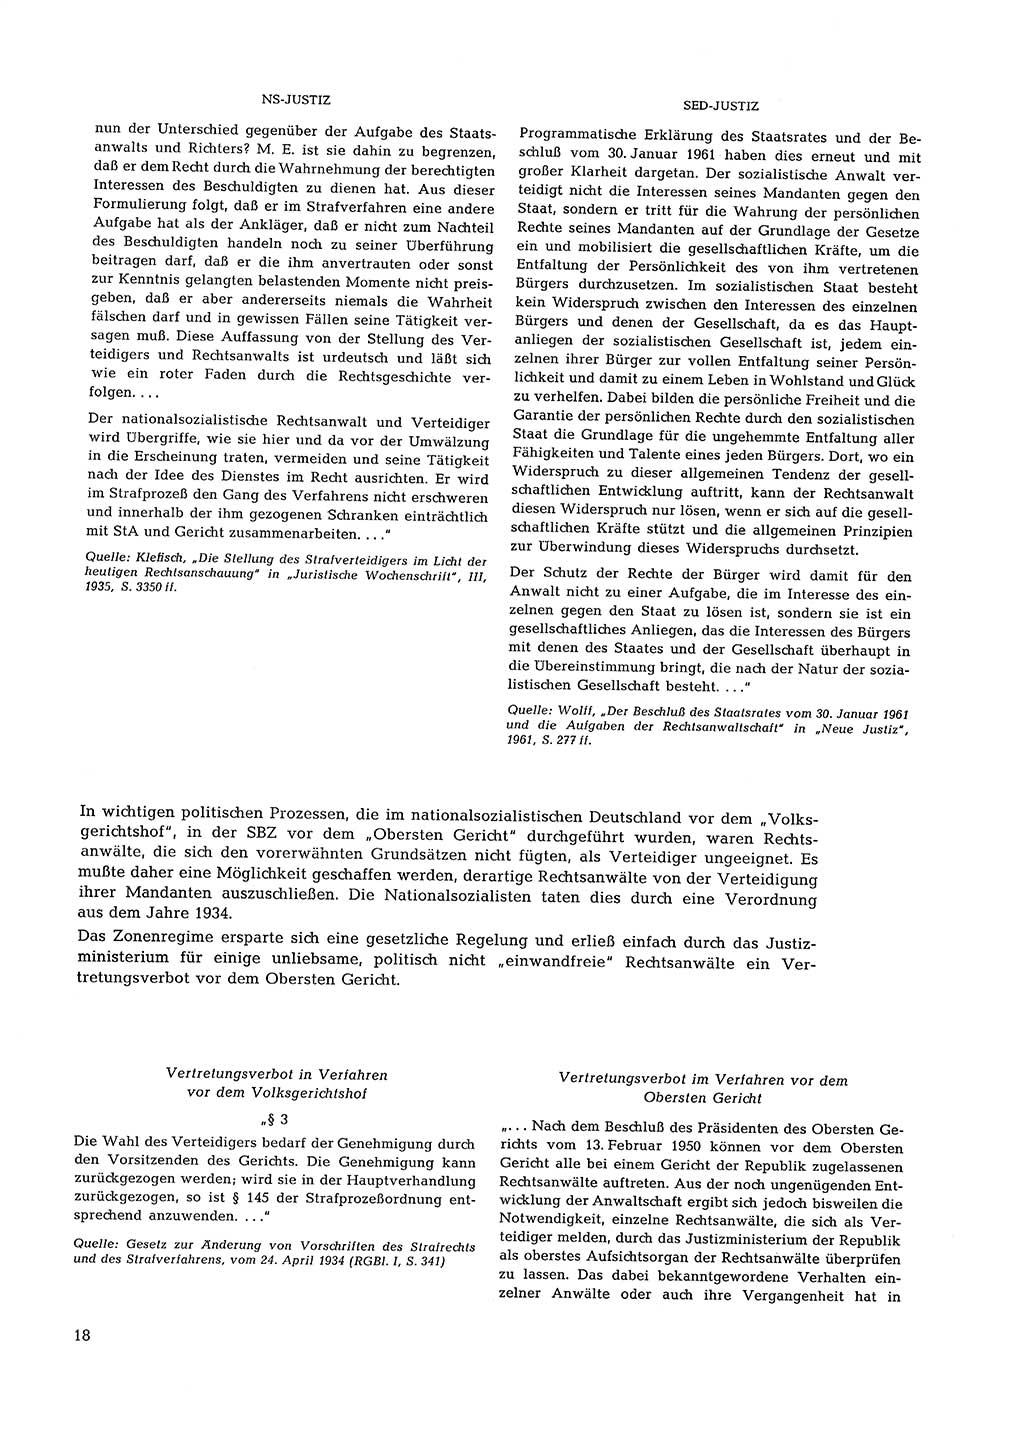 Partei-Justiz, Dokumentation über den nationalsozialistischen und kommunistischen Rechtsmißbrauch in Deutschland 1933-1963, Seite 18 (Part.-Just. Dtl. natsoz. komm. 1933-1963, S. 18)